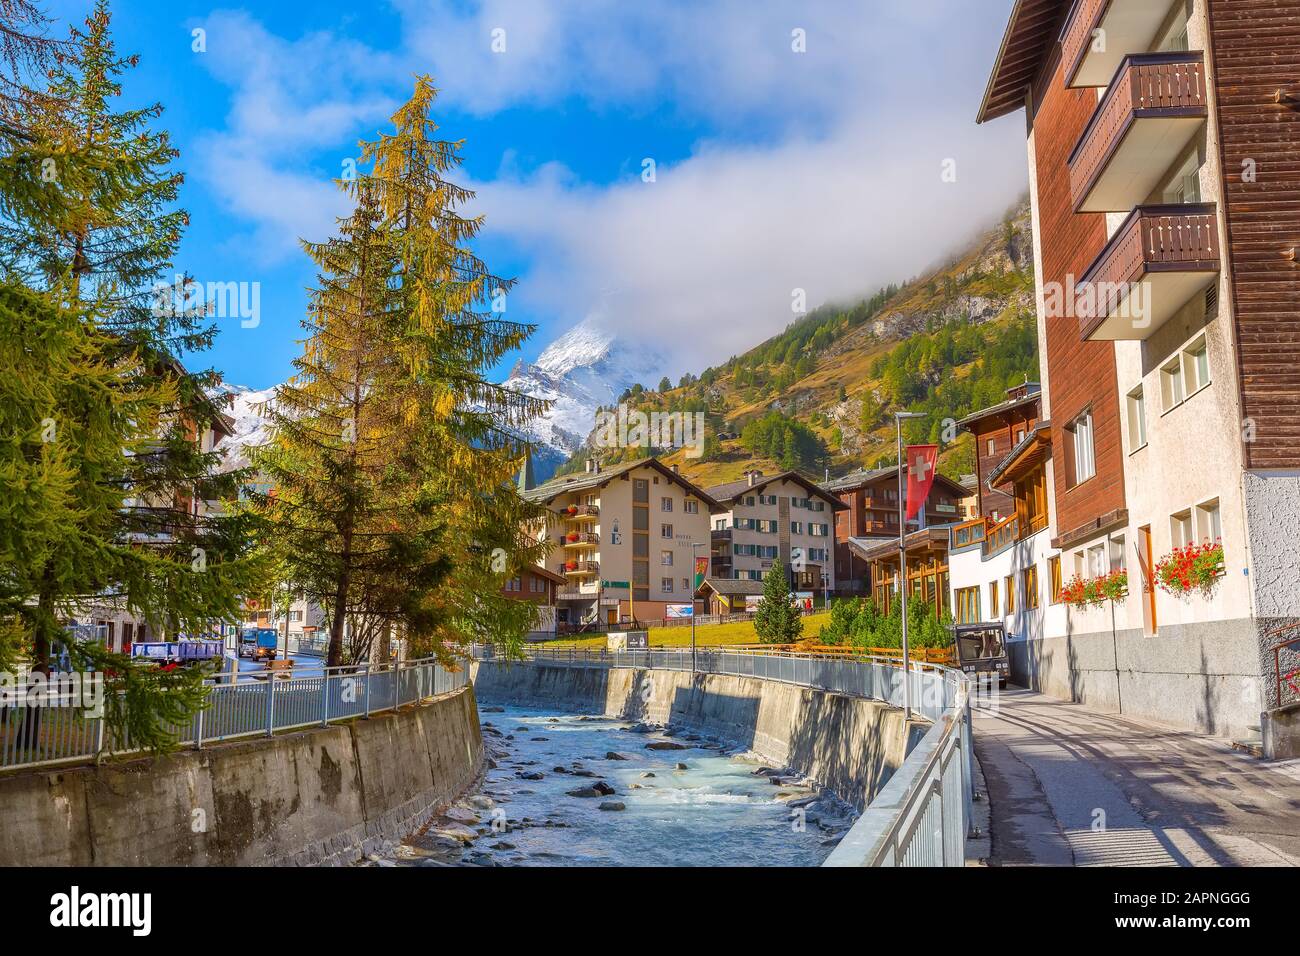 Zermatt, Svizzera - 7 ottobre 2019: Vista sulla strada della città nella famosa stazione sciistica delle Alpi svizzere, sul fiume, sulla cima del monte della neve del Cervino Foto Stock